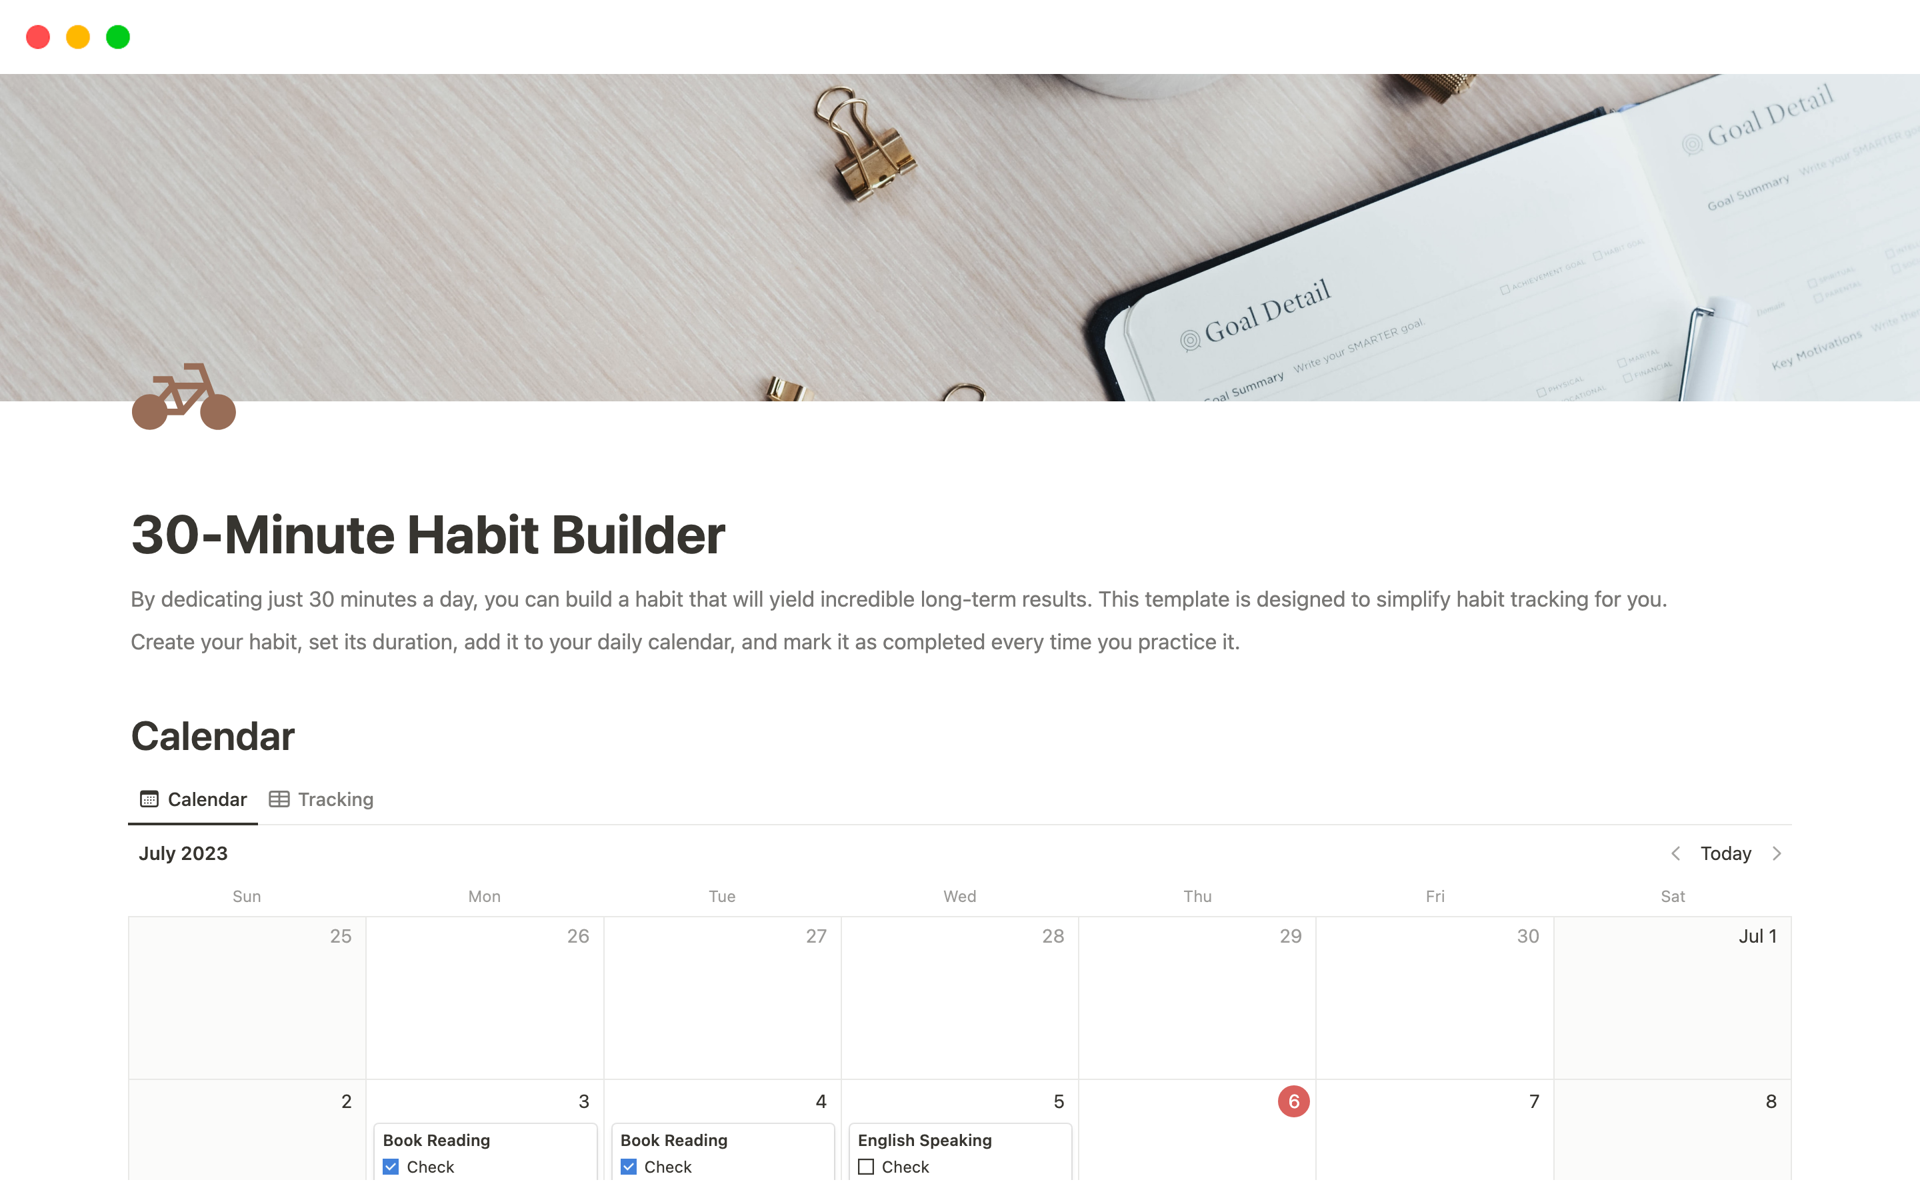 Uma prévia do modelo para 30-Minute Habit Builder